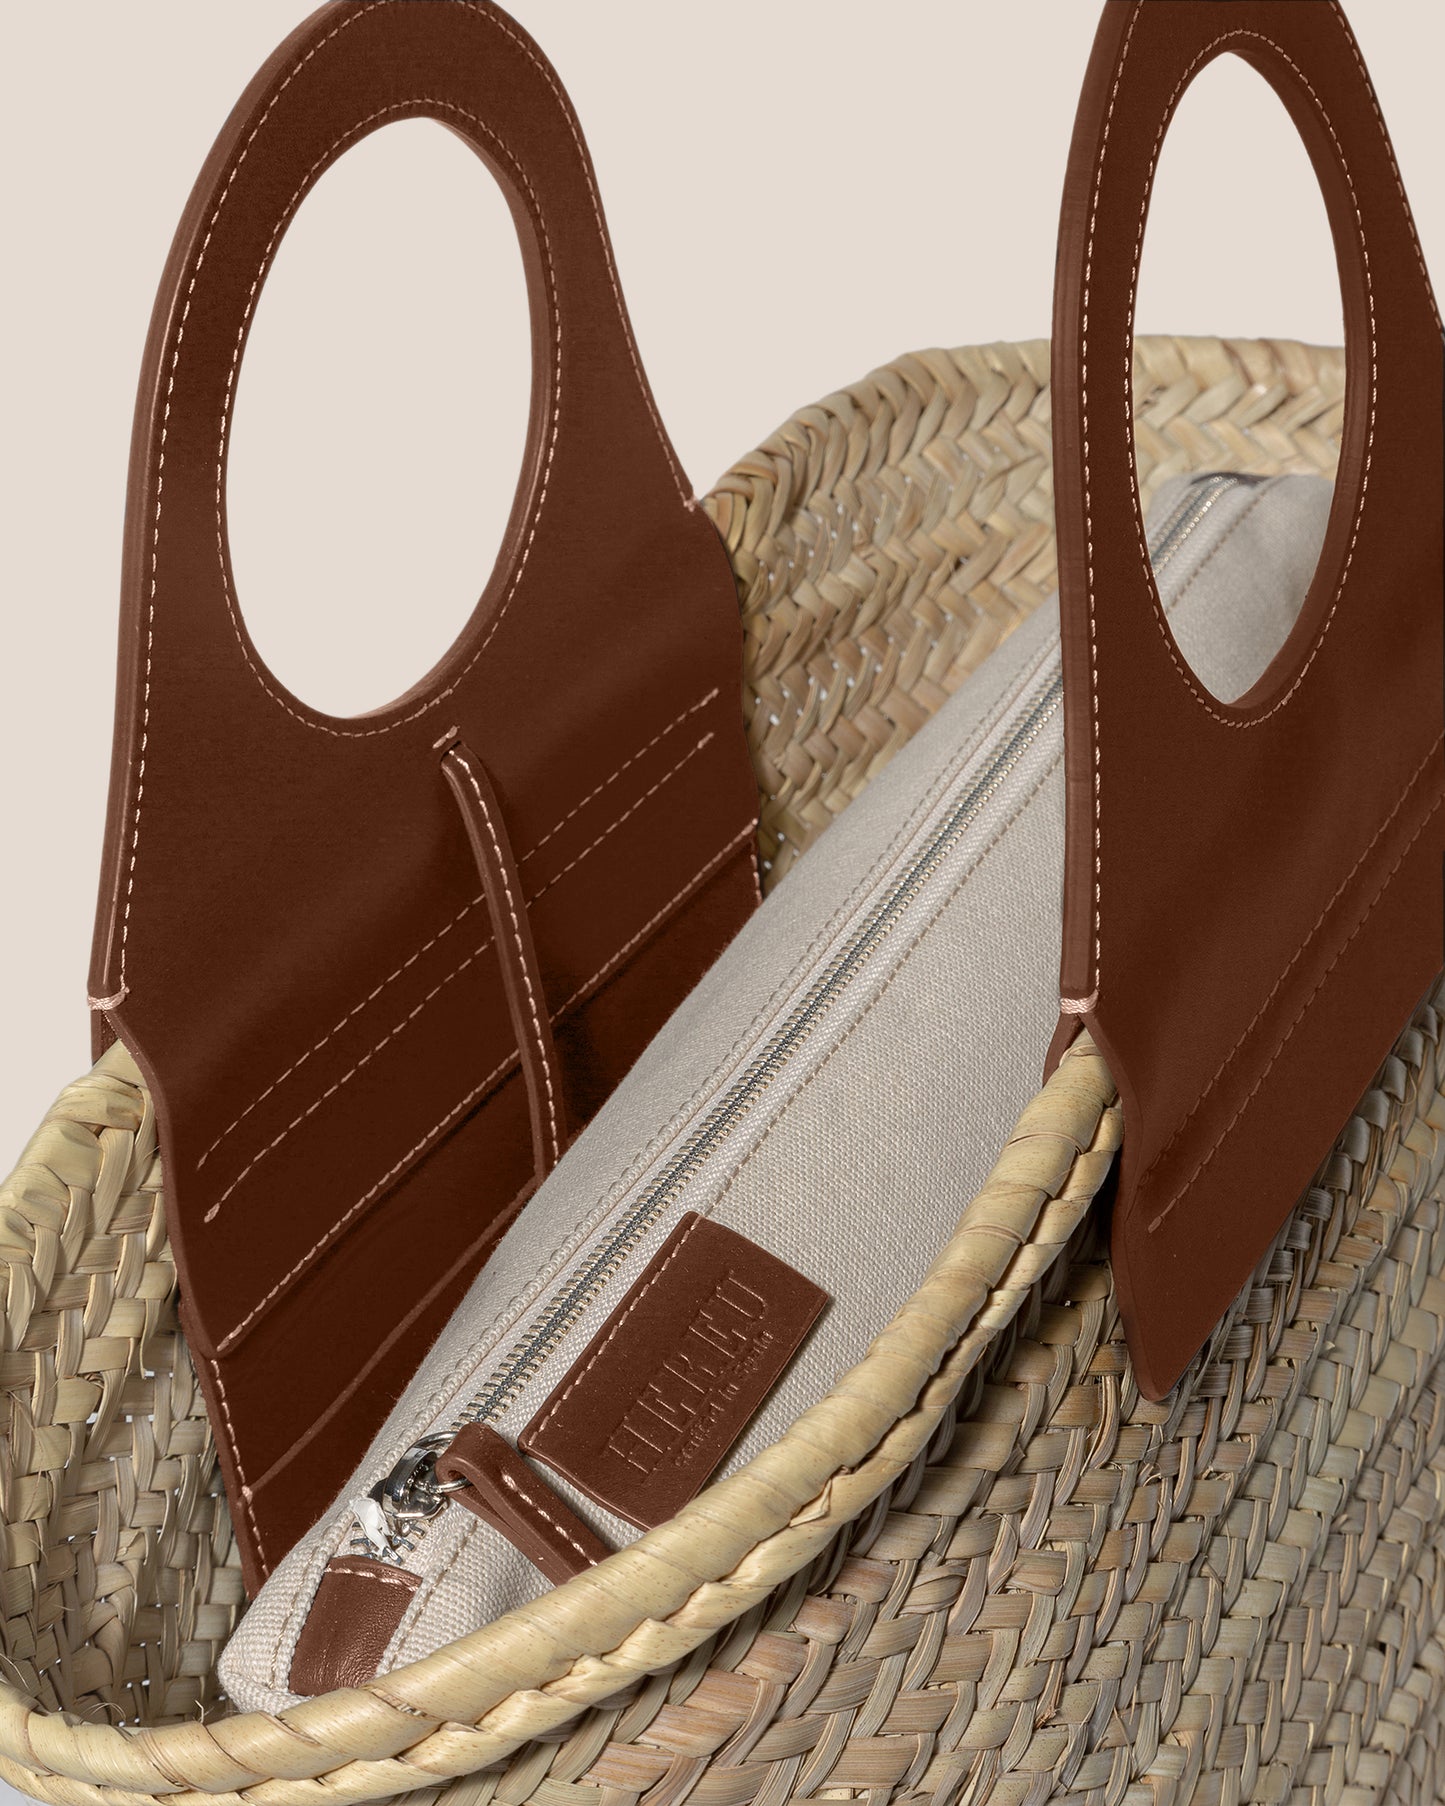 HEREU Cabas Woven Straw Top-Handle Bag